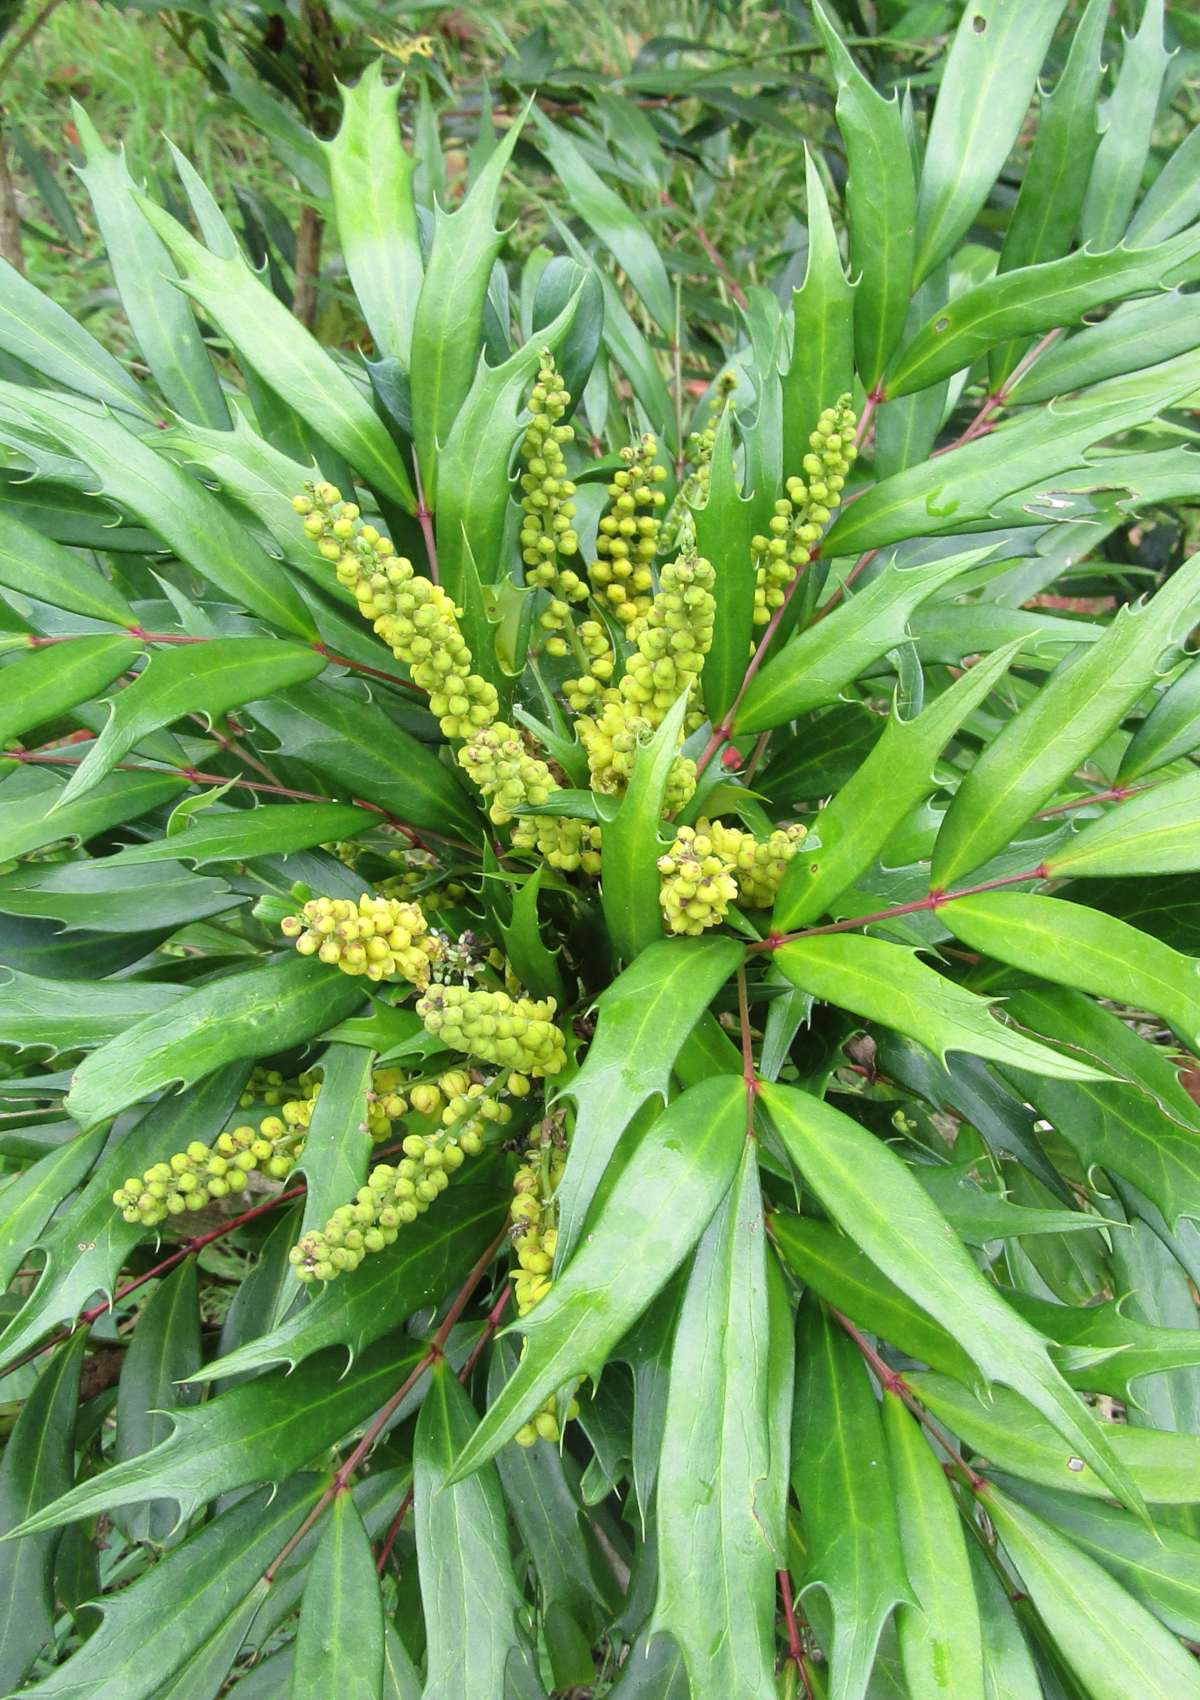 Leaves and young flowers of the Mahonia eurybracteata shrub